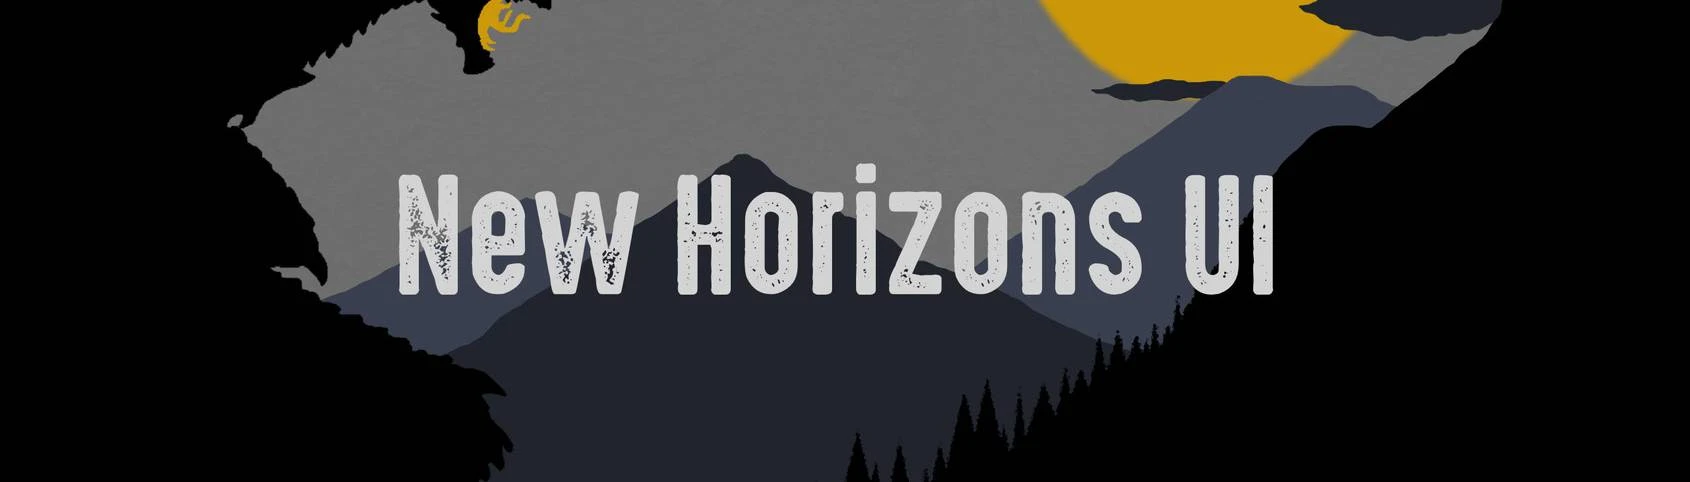 Steam Workshop::Horizon Forbidden West 1.0.1